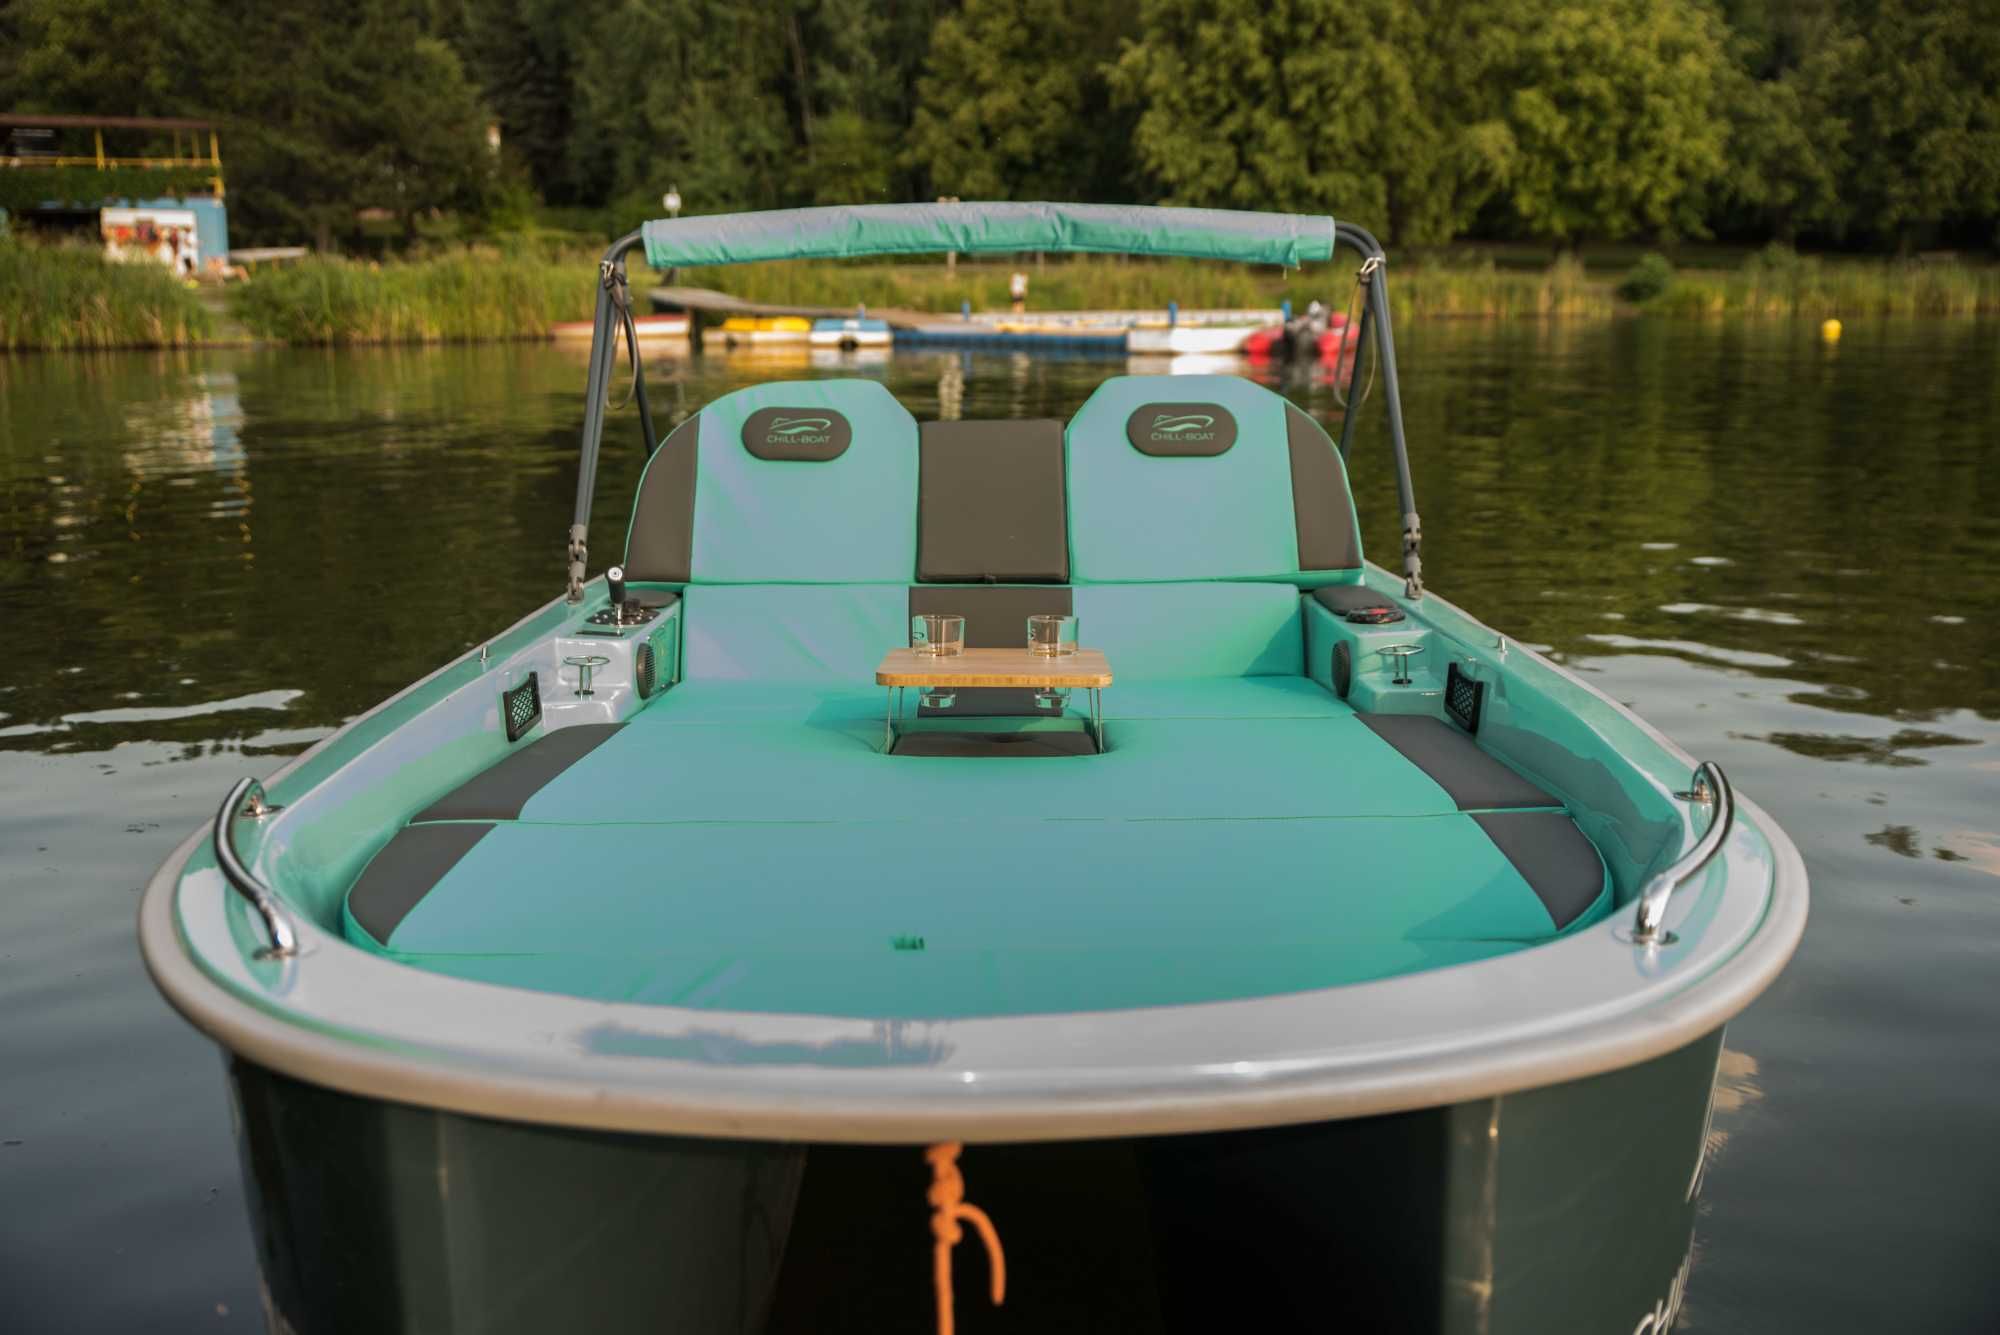 Katamaran elektryczny Chill-Boat Cane rower wodny łódź